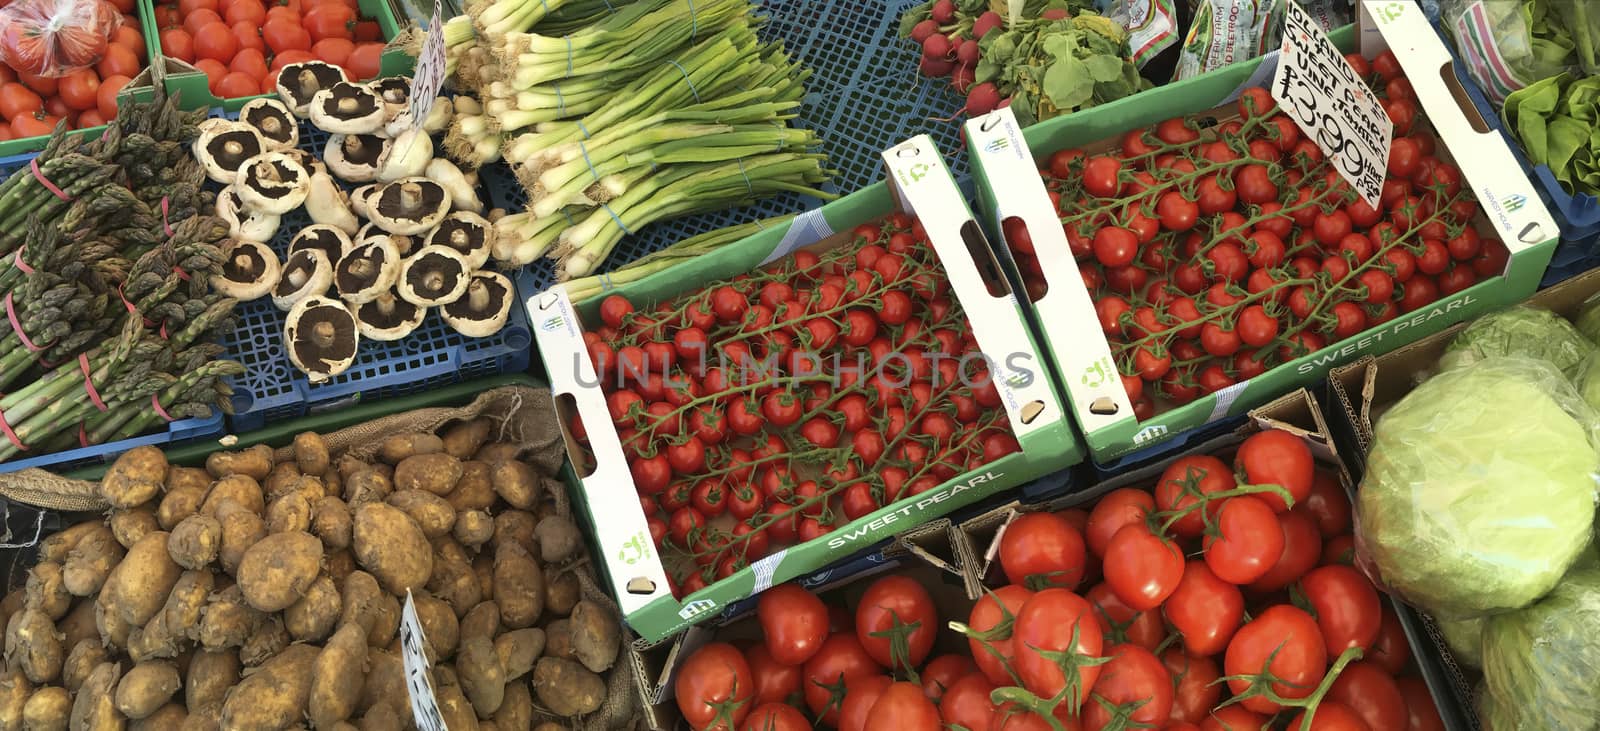 Fresh Vegetables - Market Stall by SteveAllenPhoto